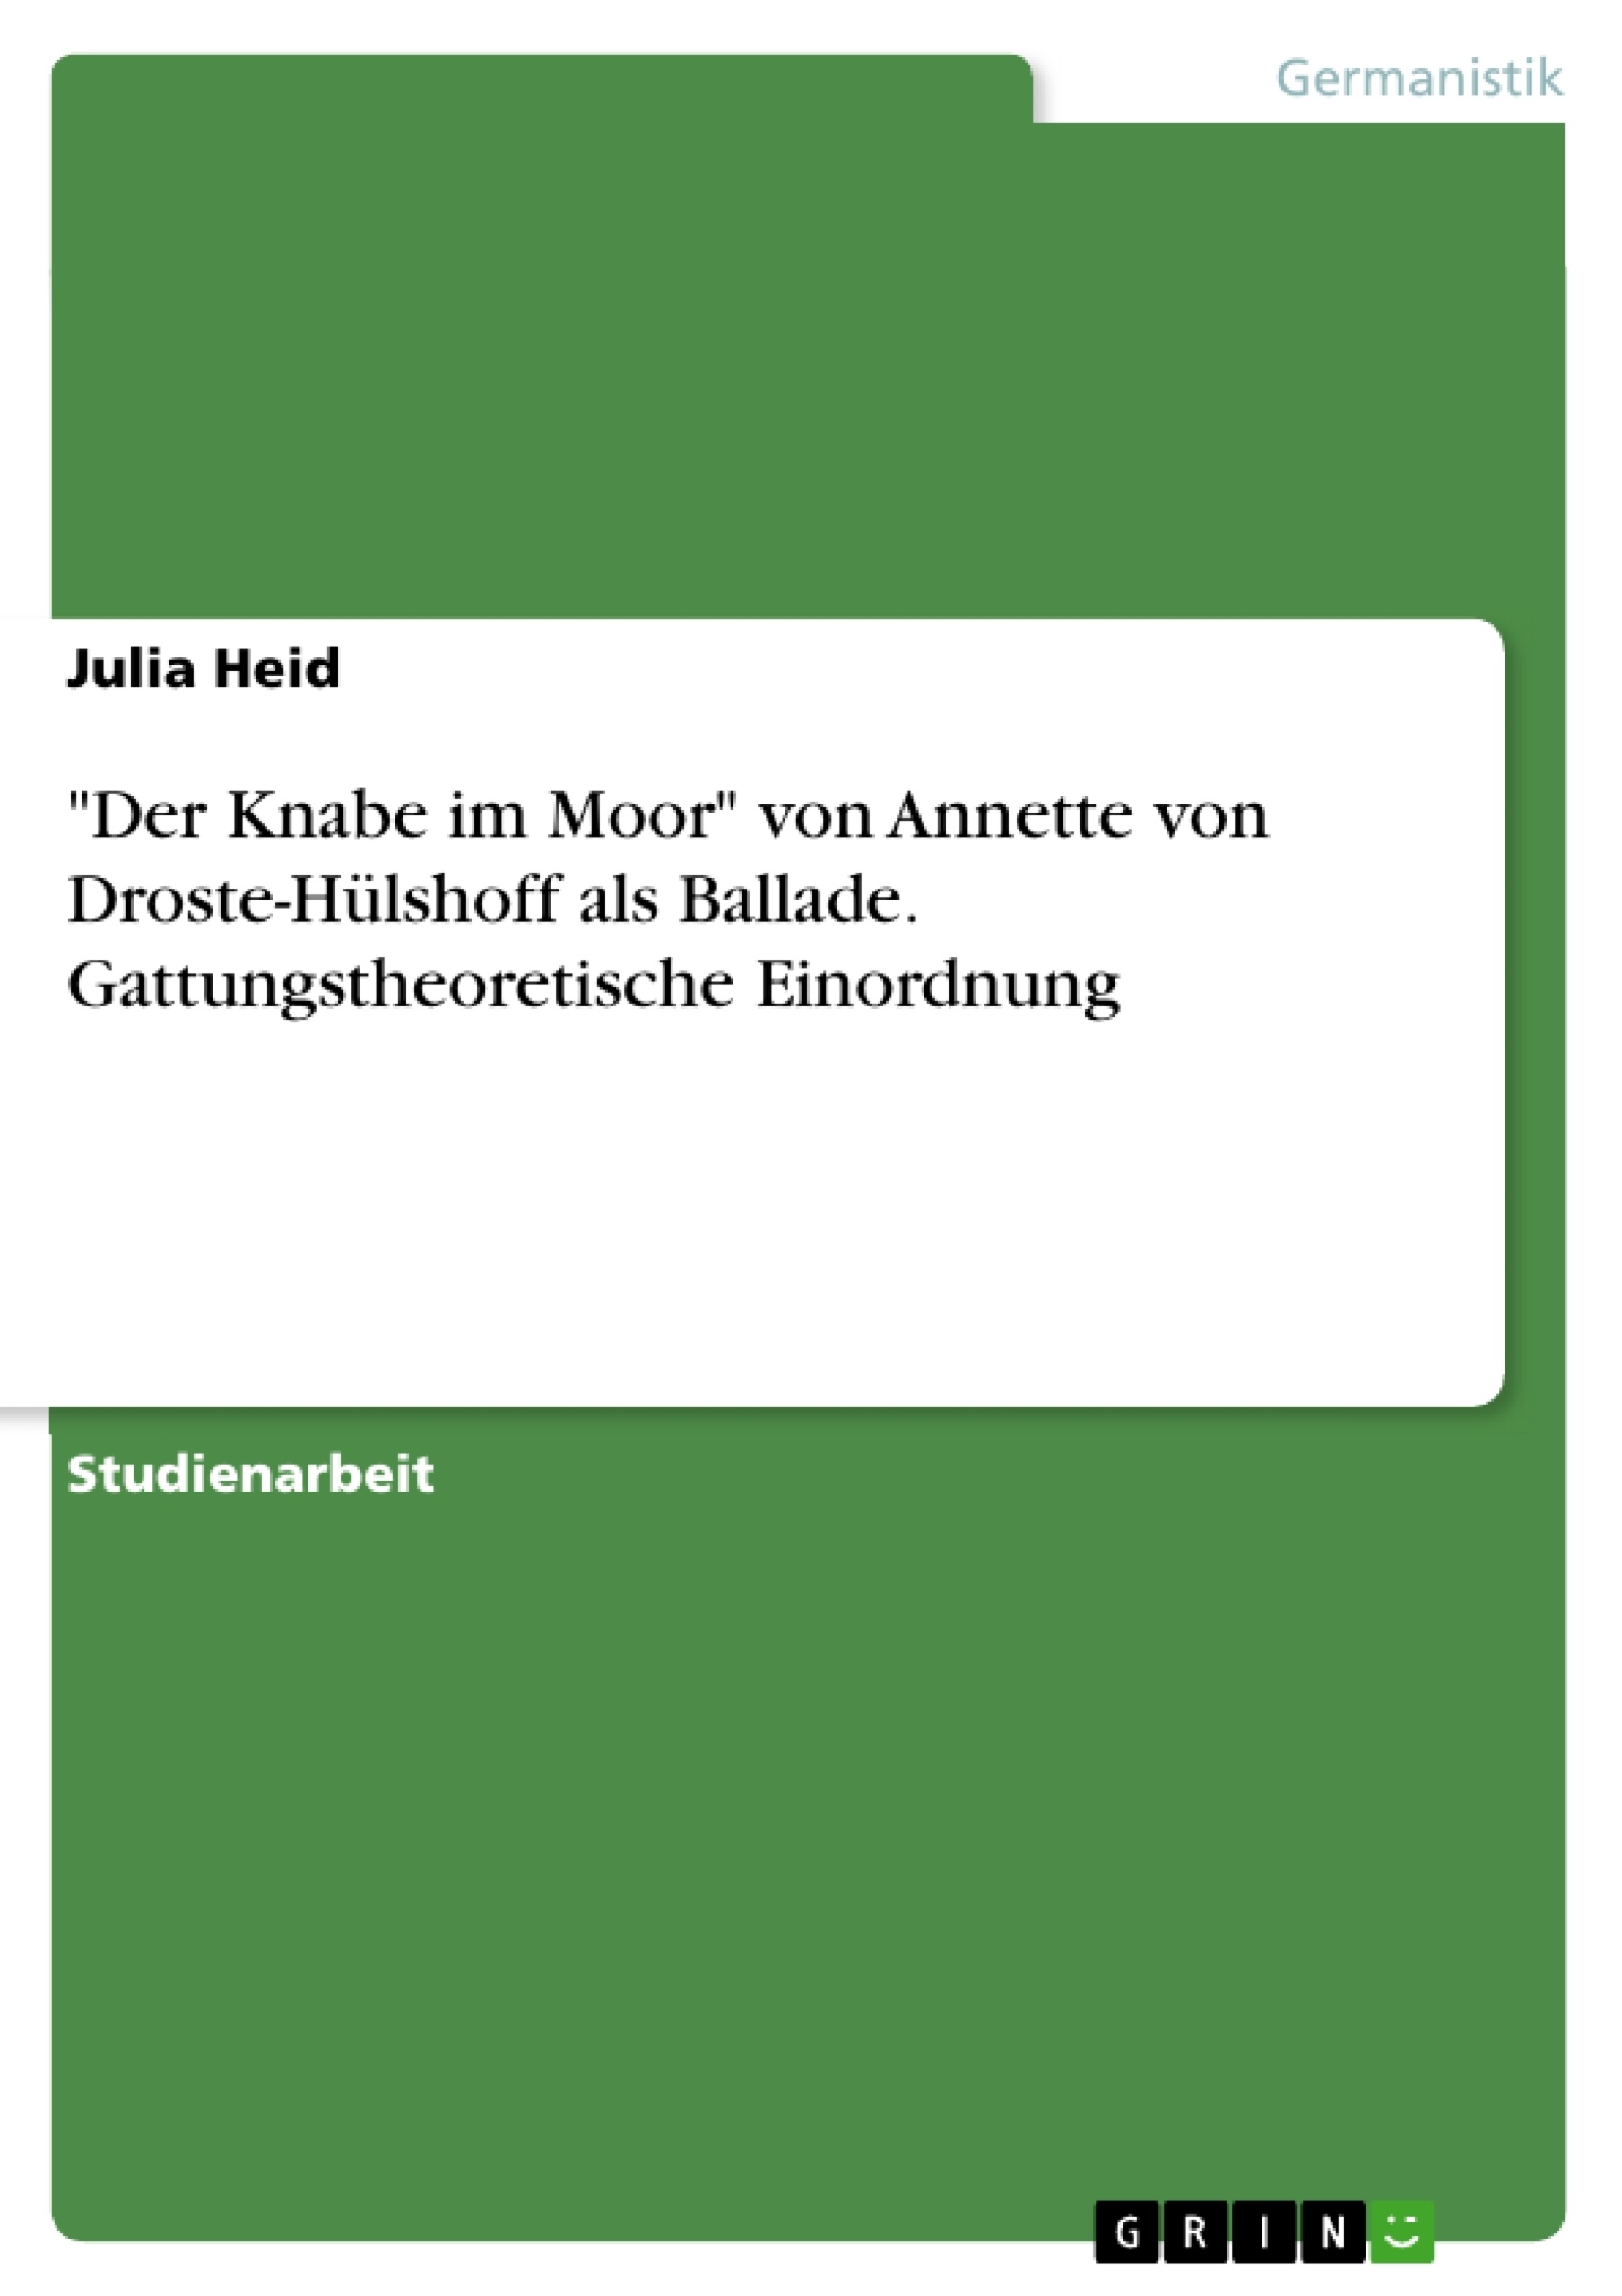 Title: "Der Knabe im Moor" von Annette von Droste-Hülshoff als Ballade. Gattungstheoretische Einordnung